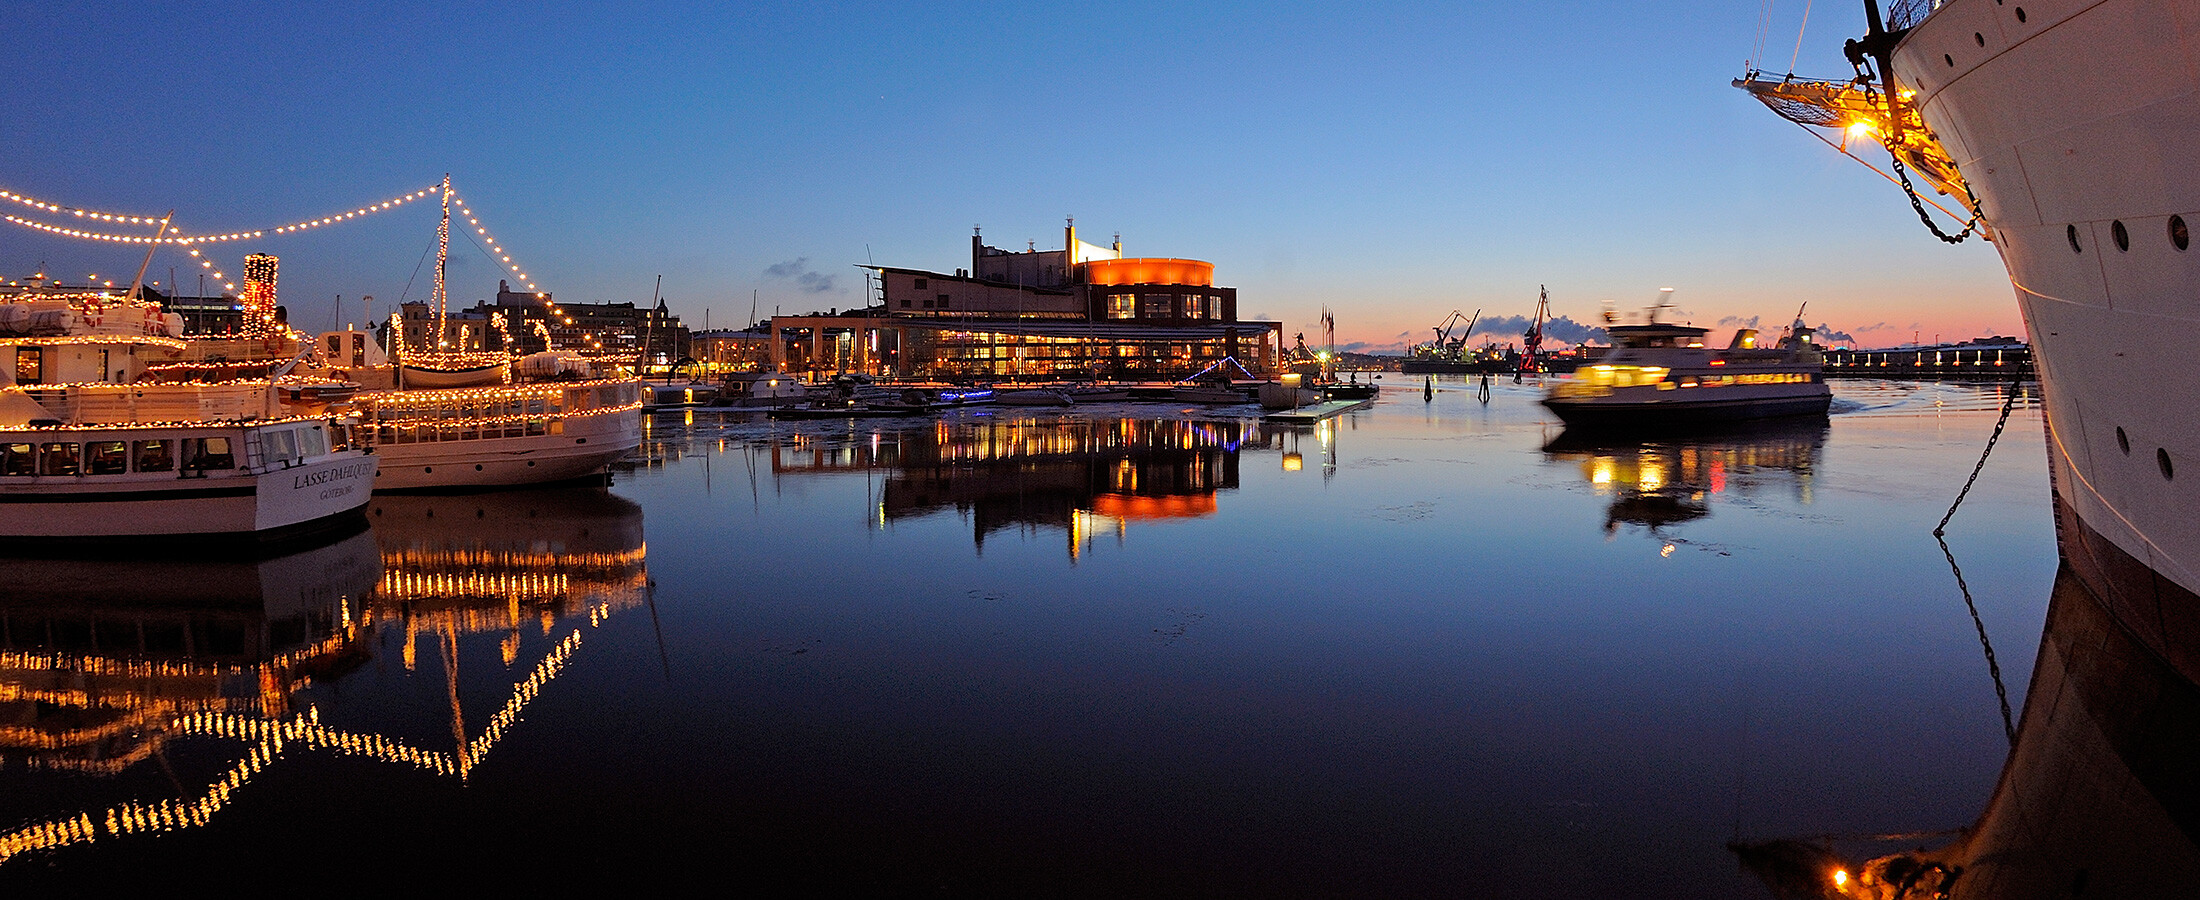 Hafen in Göteborg in Schweden schön beleuchtet in der Nacht